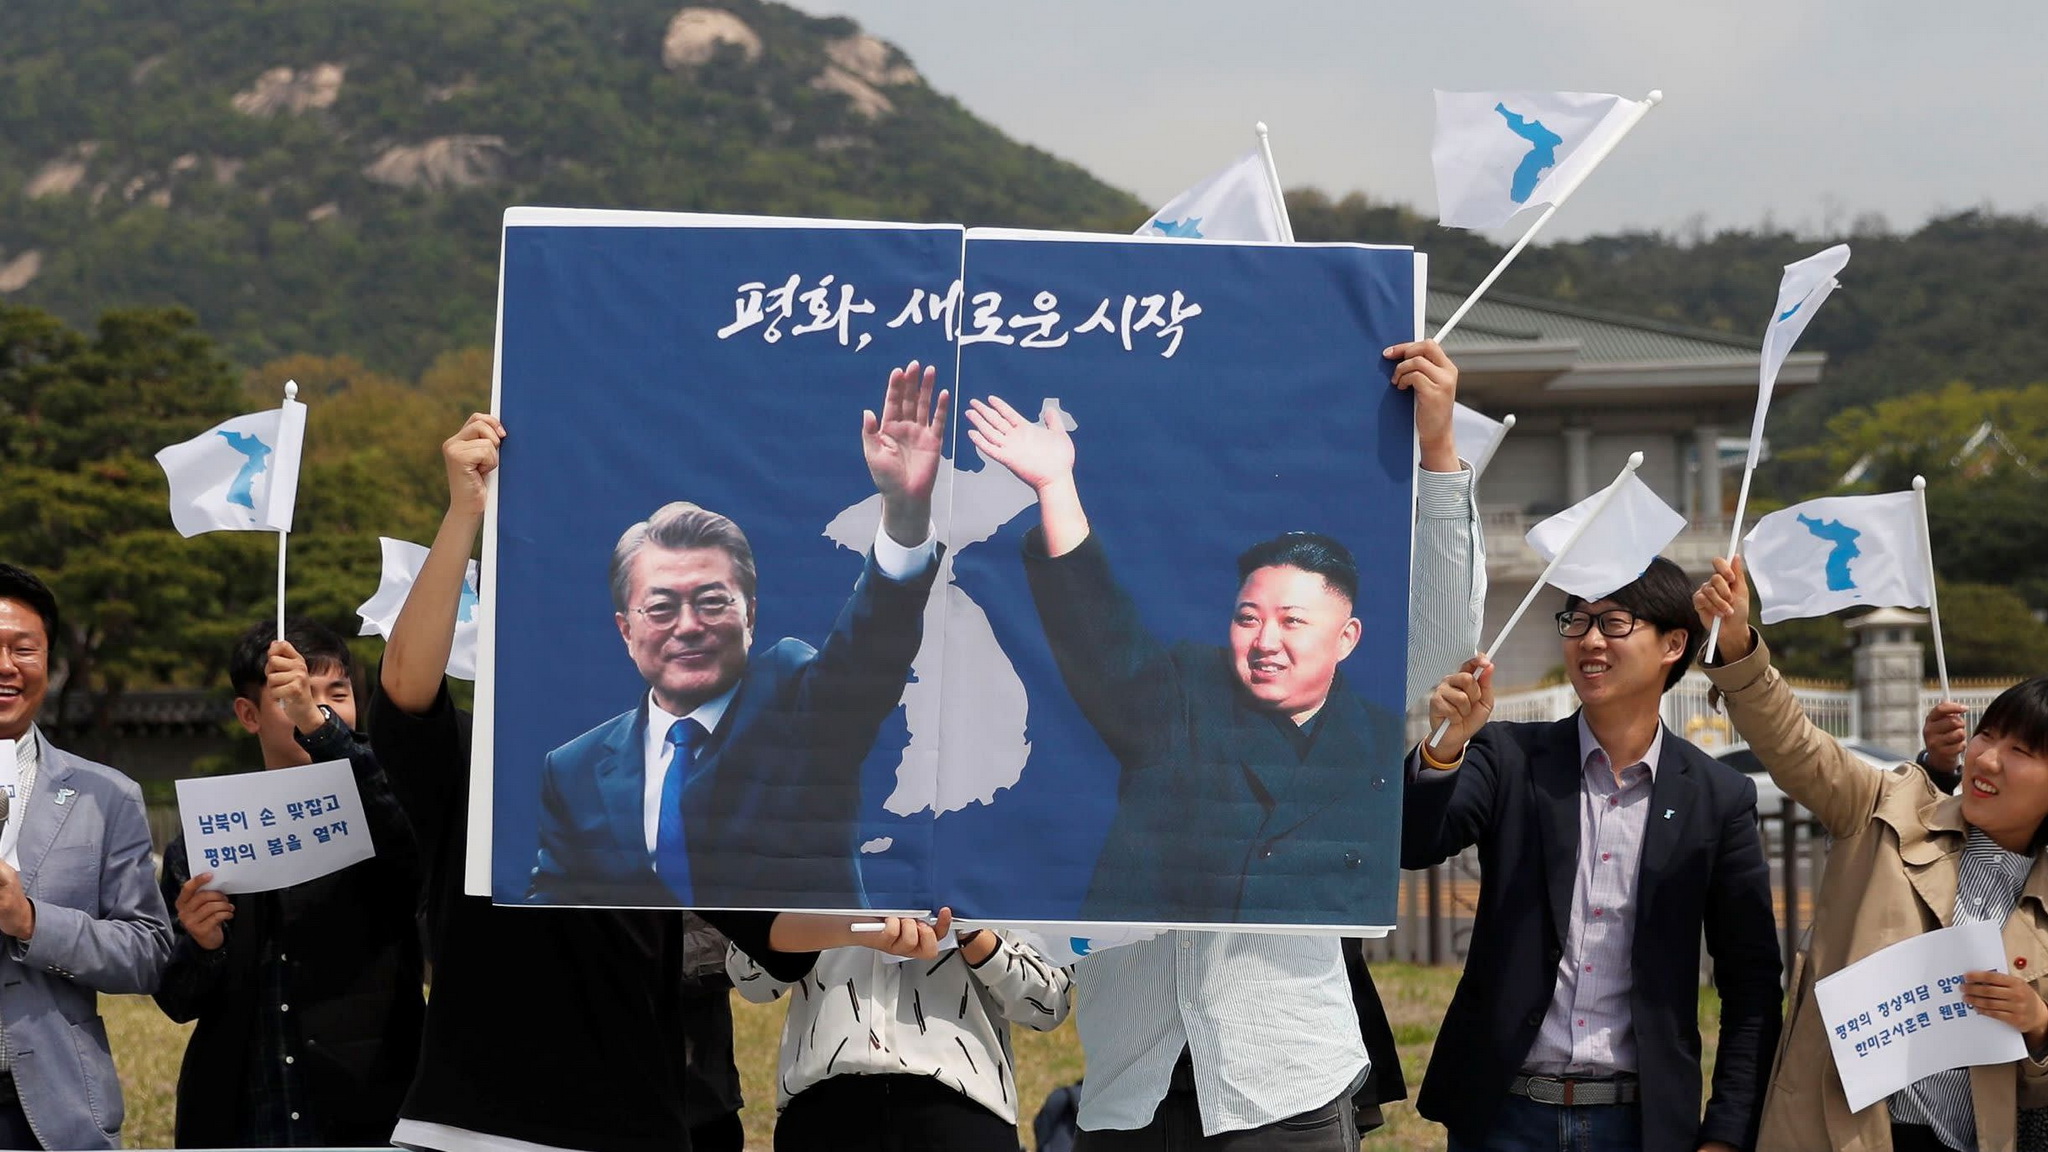 Các sinh viên giơ cao tấm poster có ảnh của nhà lãnh đạo Triều Tiên Kim Jong-un và Tổng thống Hàn Quốc Moon Jae-in. (Nguồn: Asia.nikkei.com)